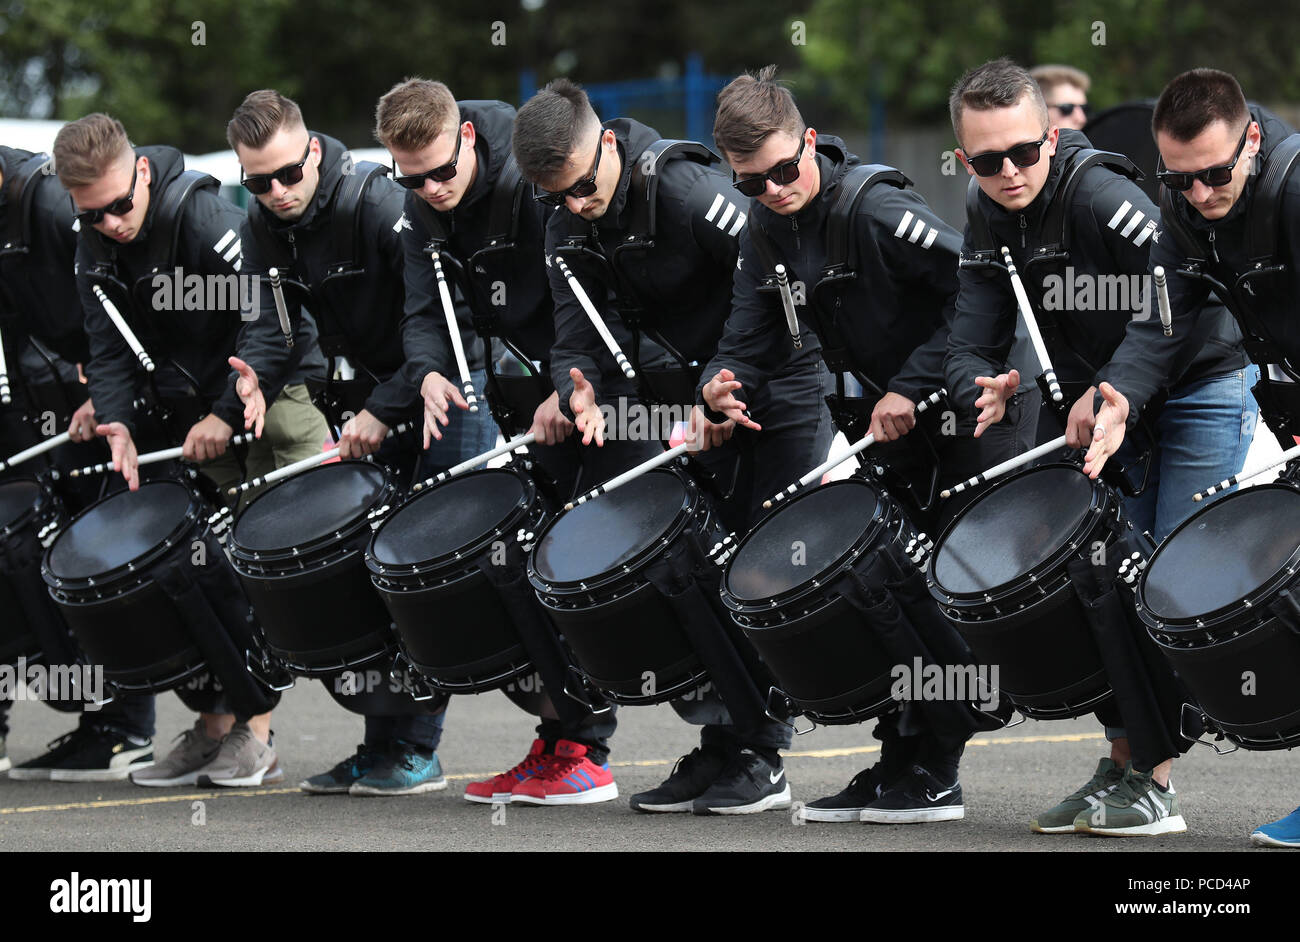 Le Top Secret Drum Corps à partir de la Suisse pendant la répétition pour la Royal Military Tattoo d'Edimbourg à Redford Barracks, Édimbourg. Banque D'Images